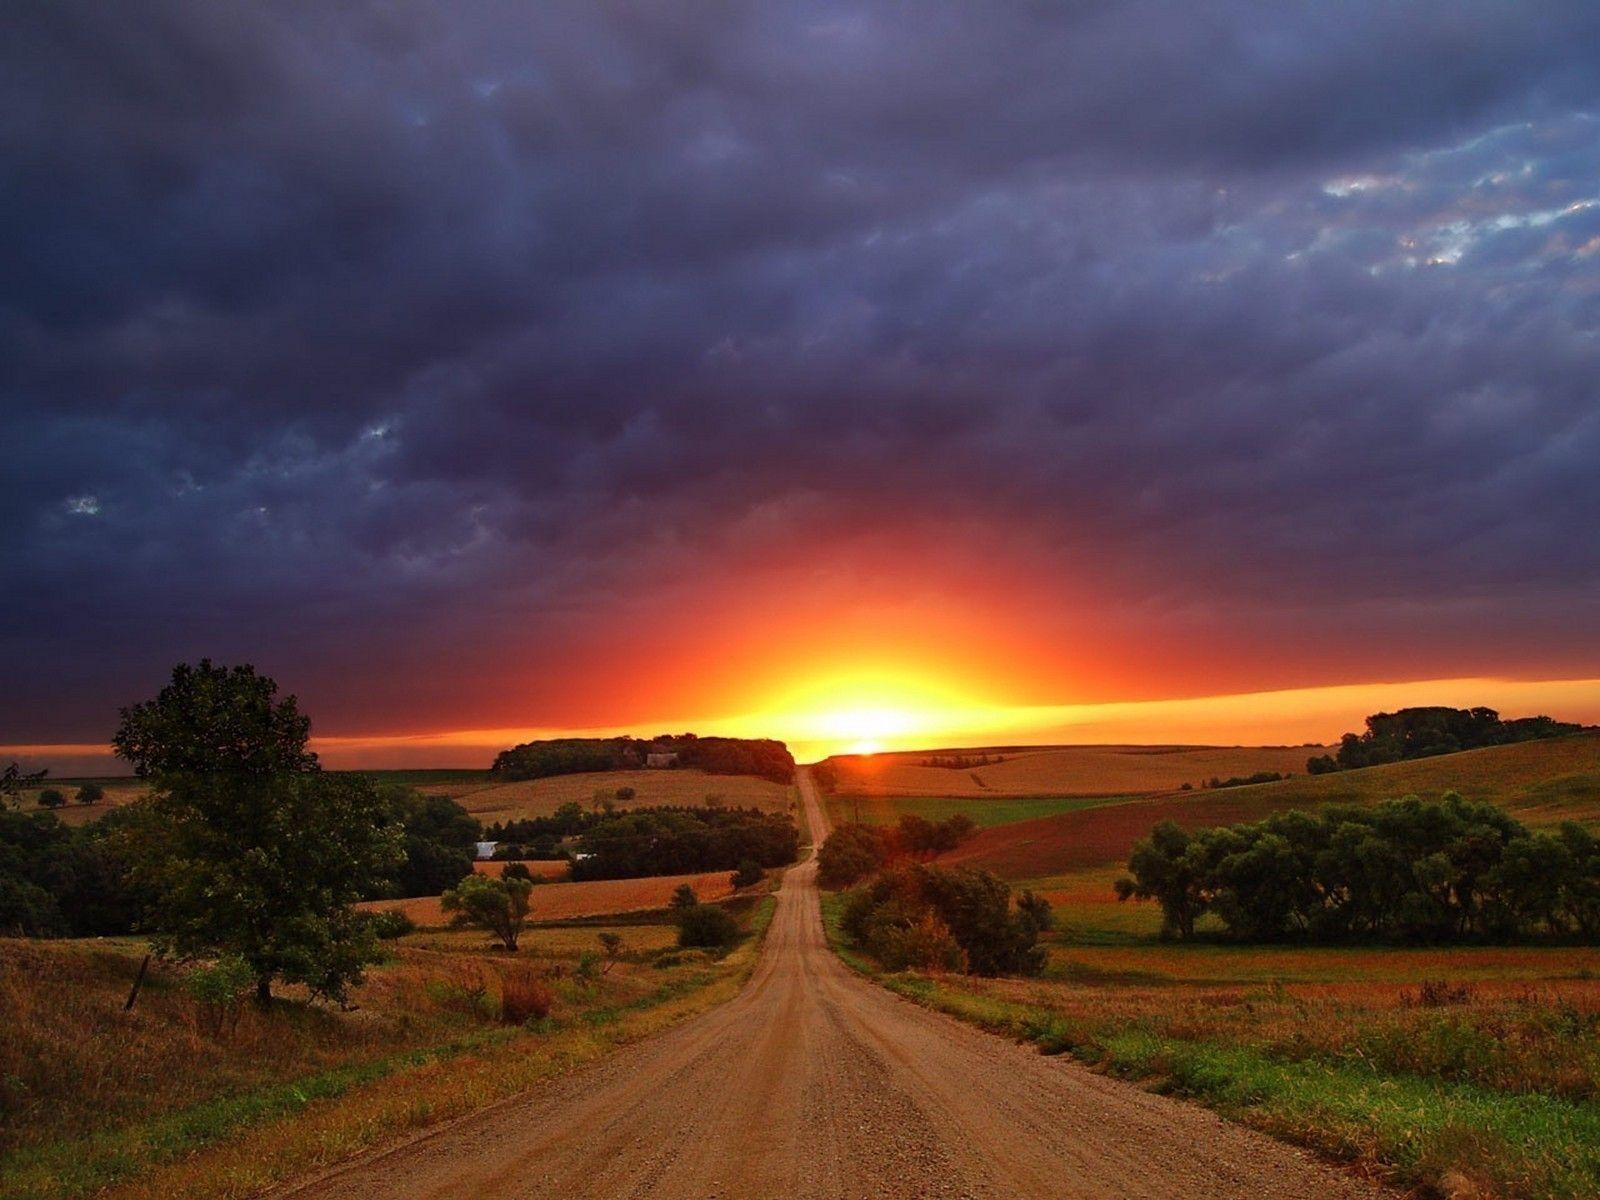 Sunset Wallpaper. Free Download HD Latest Beautiful Wonderful Image